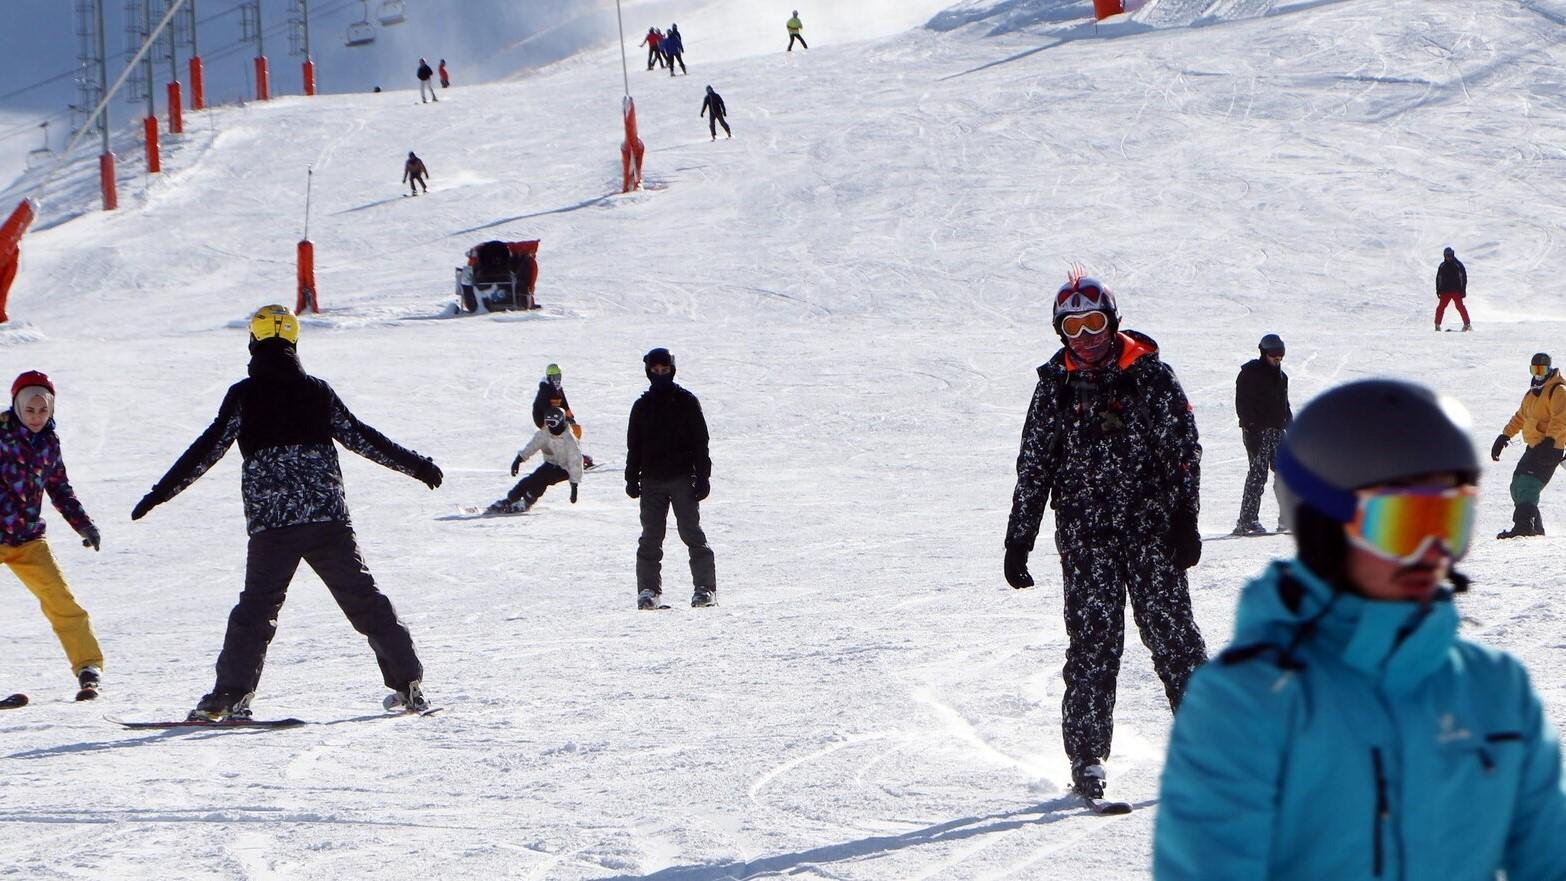 TÜRKIYE Skiseizoen begint in het oosten van het land Het skiseizoen is begonnen in Palandöken en Konaklı in de oostelijke provincie Erzurum, een van de favoriete bestemmingen voor wintertoerisme.